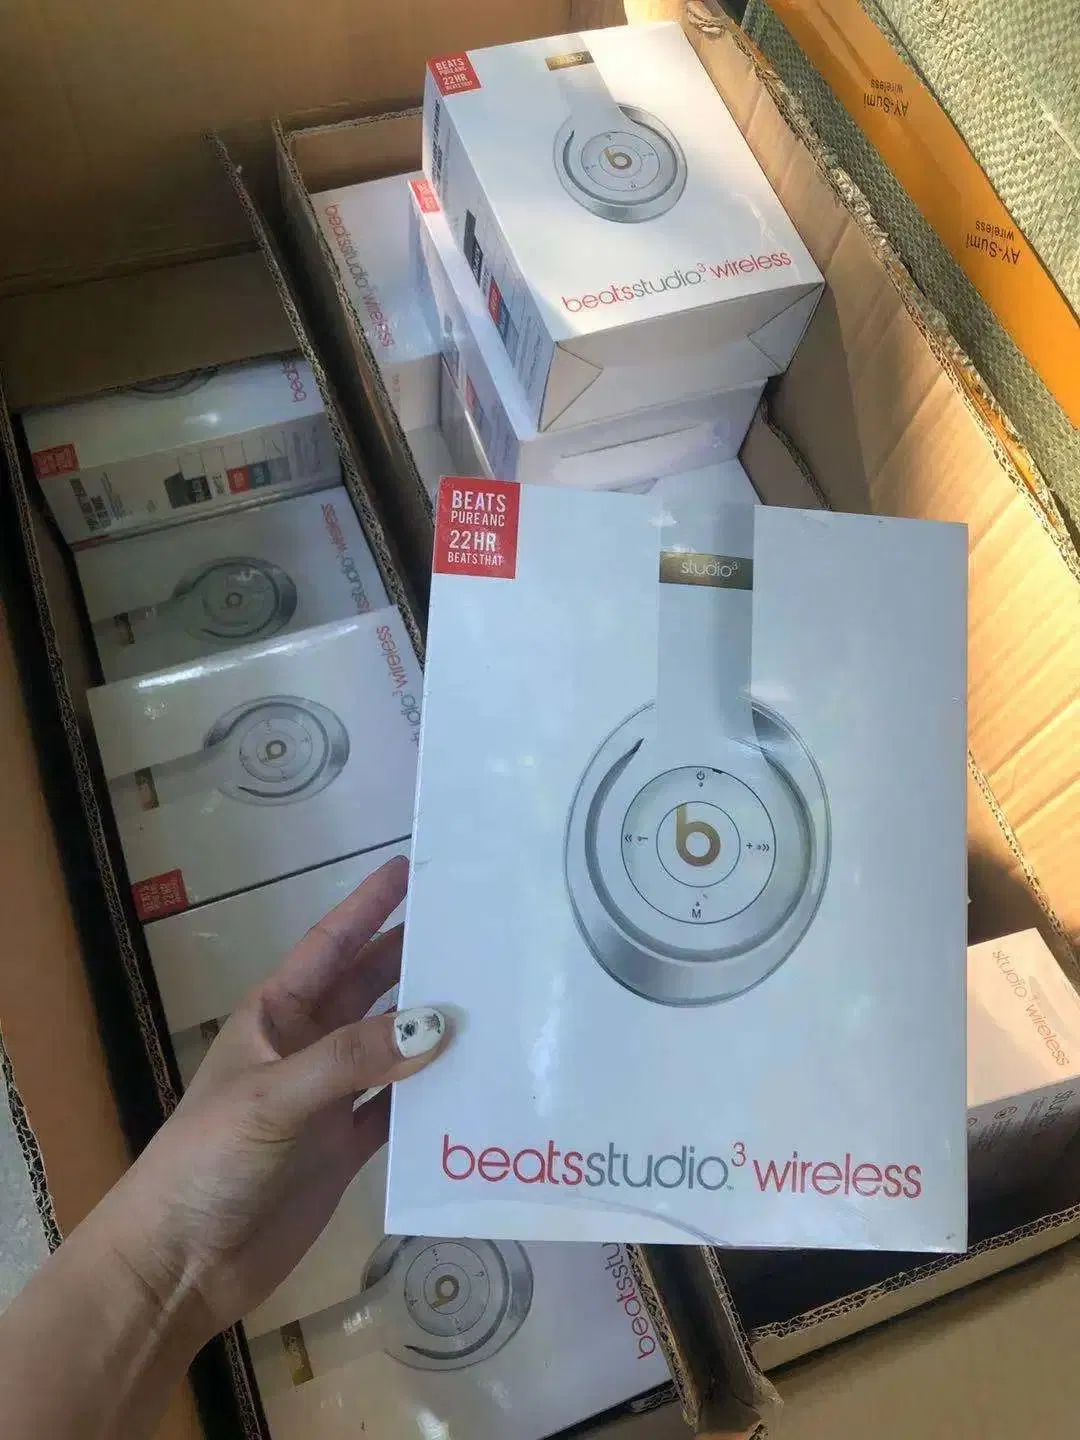 Auscultadores Bluetooth para Beats Studio 3, original de alta qualidade 1:1